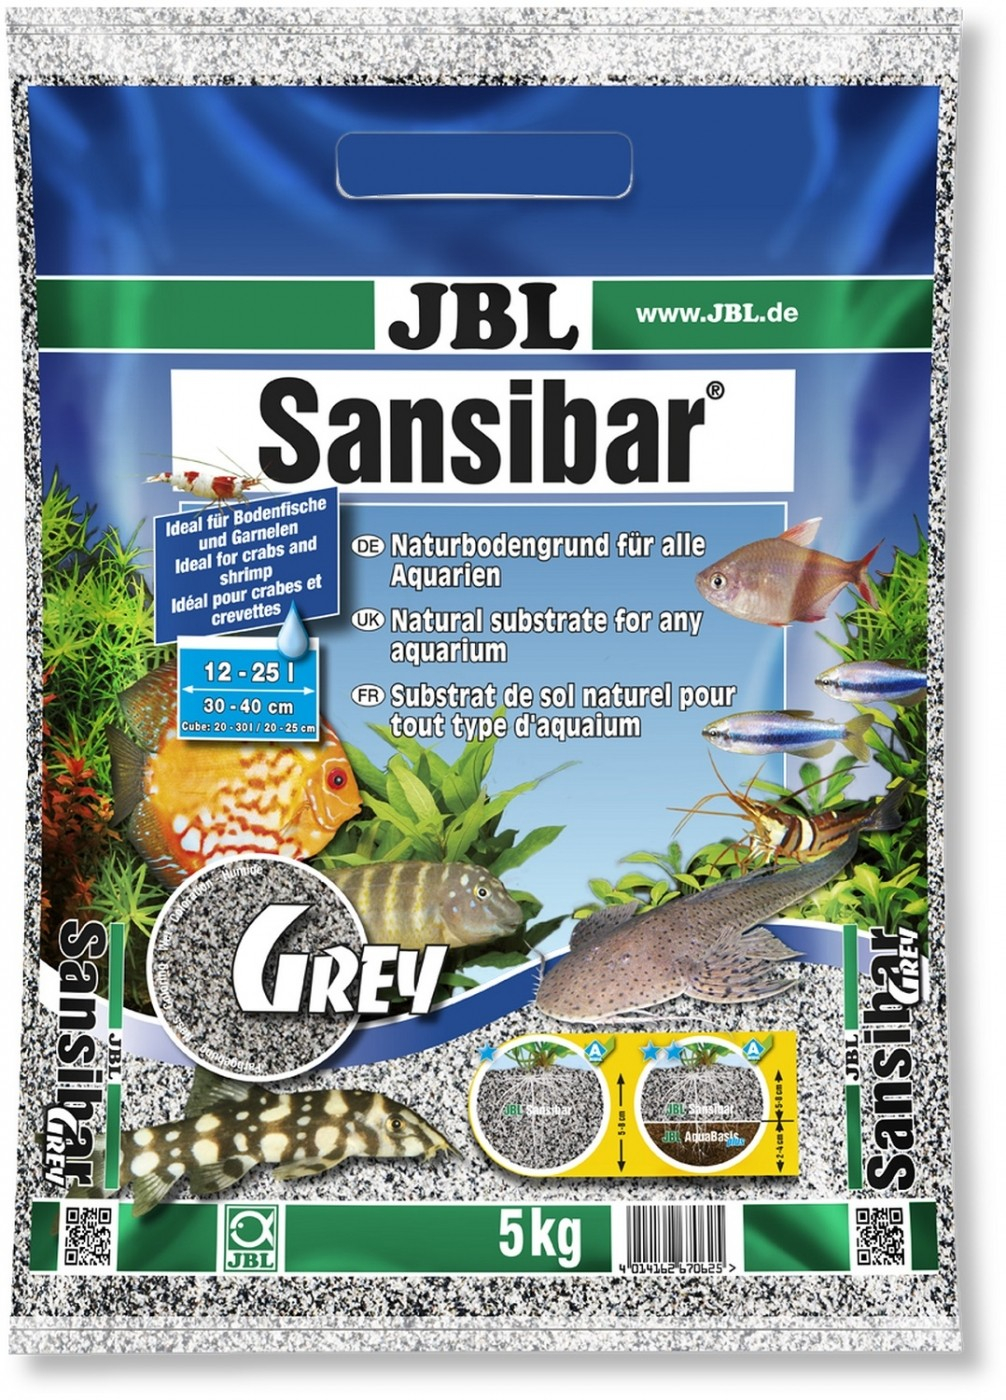 JBL Sansibar Grey Sustrato gris para acuarios